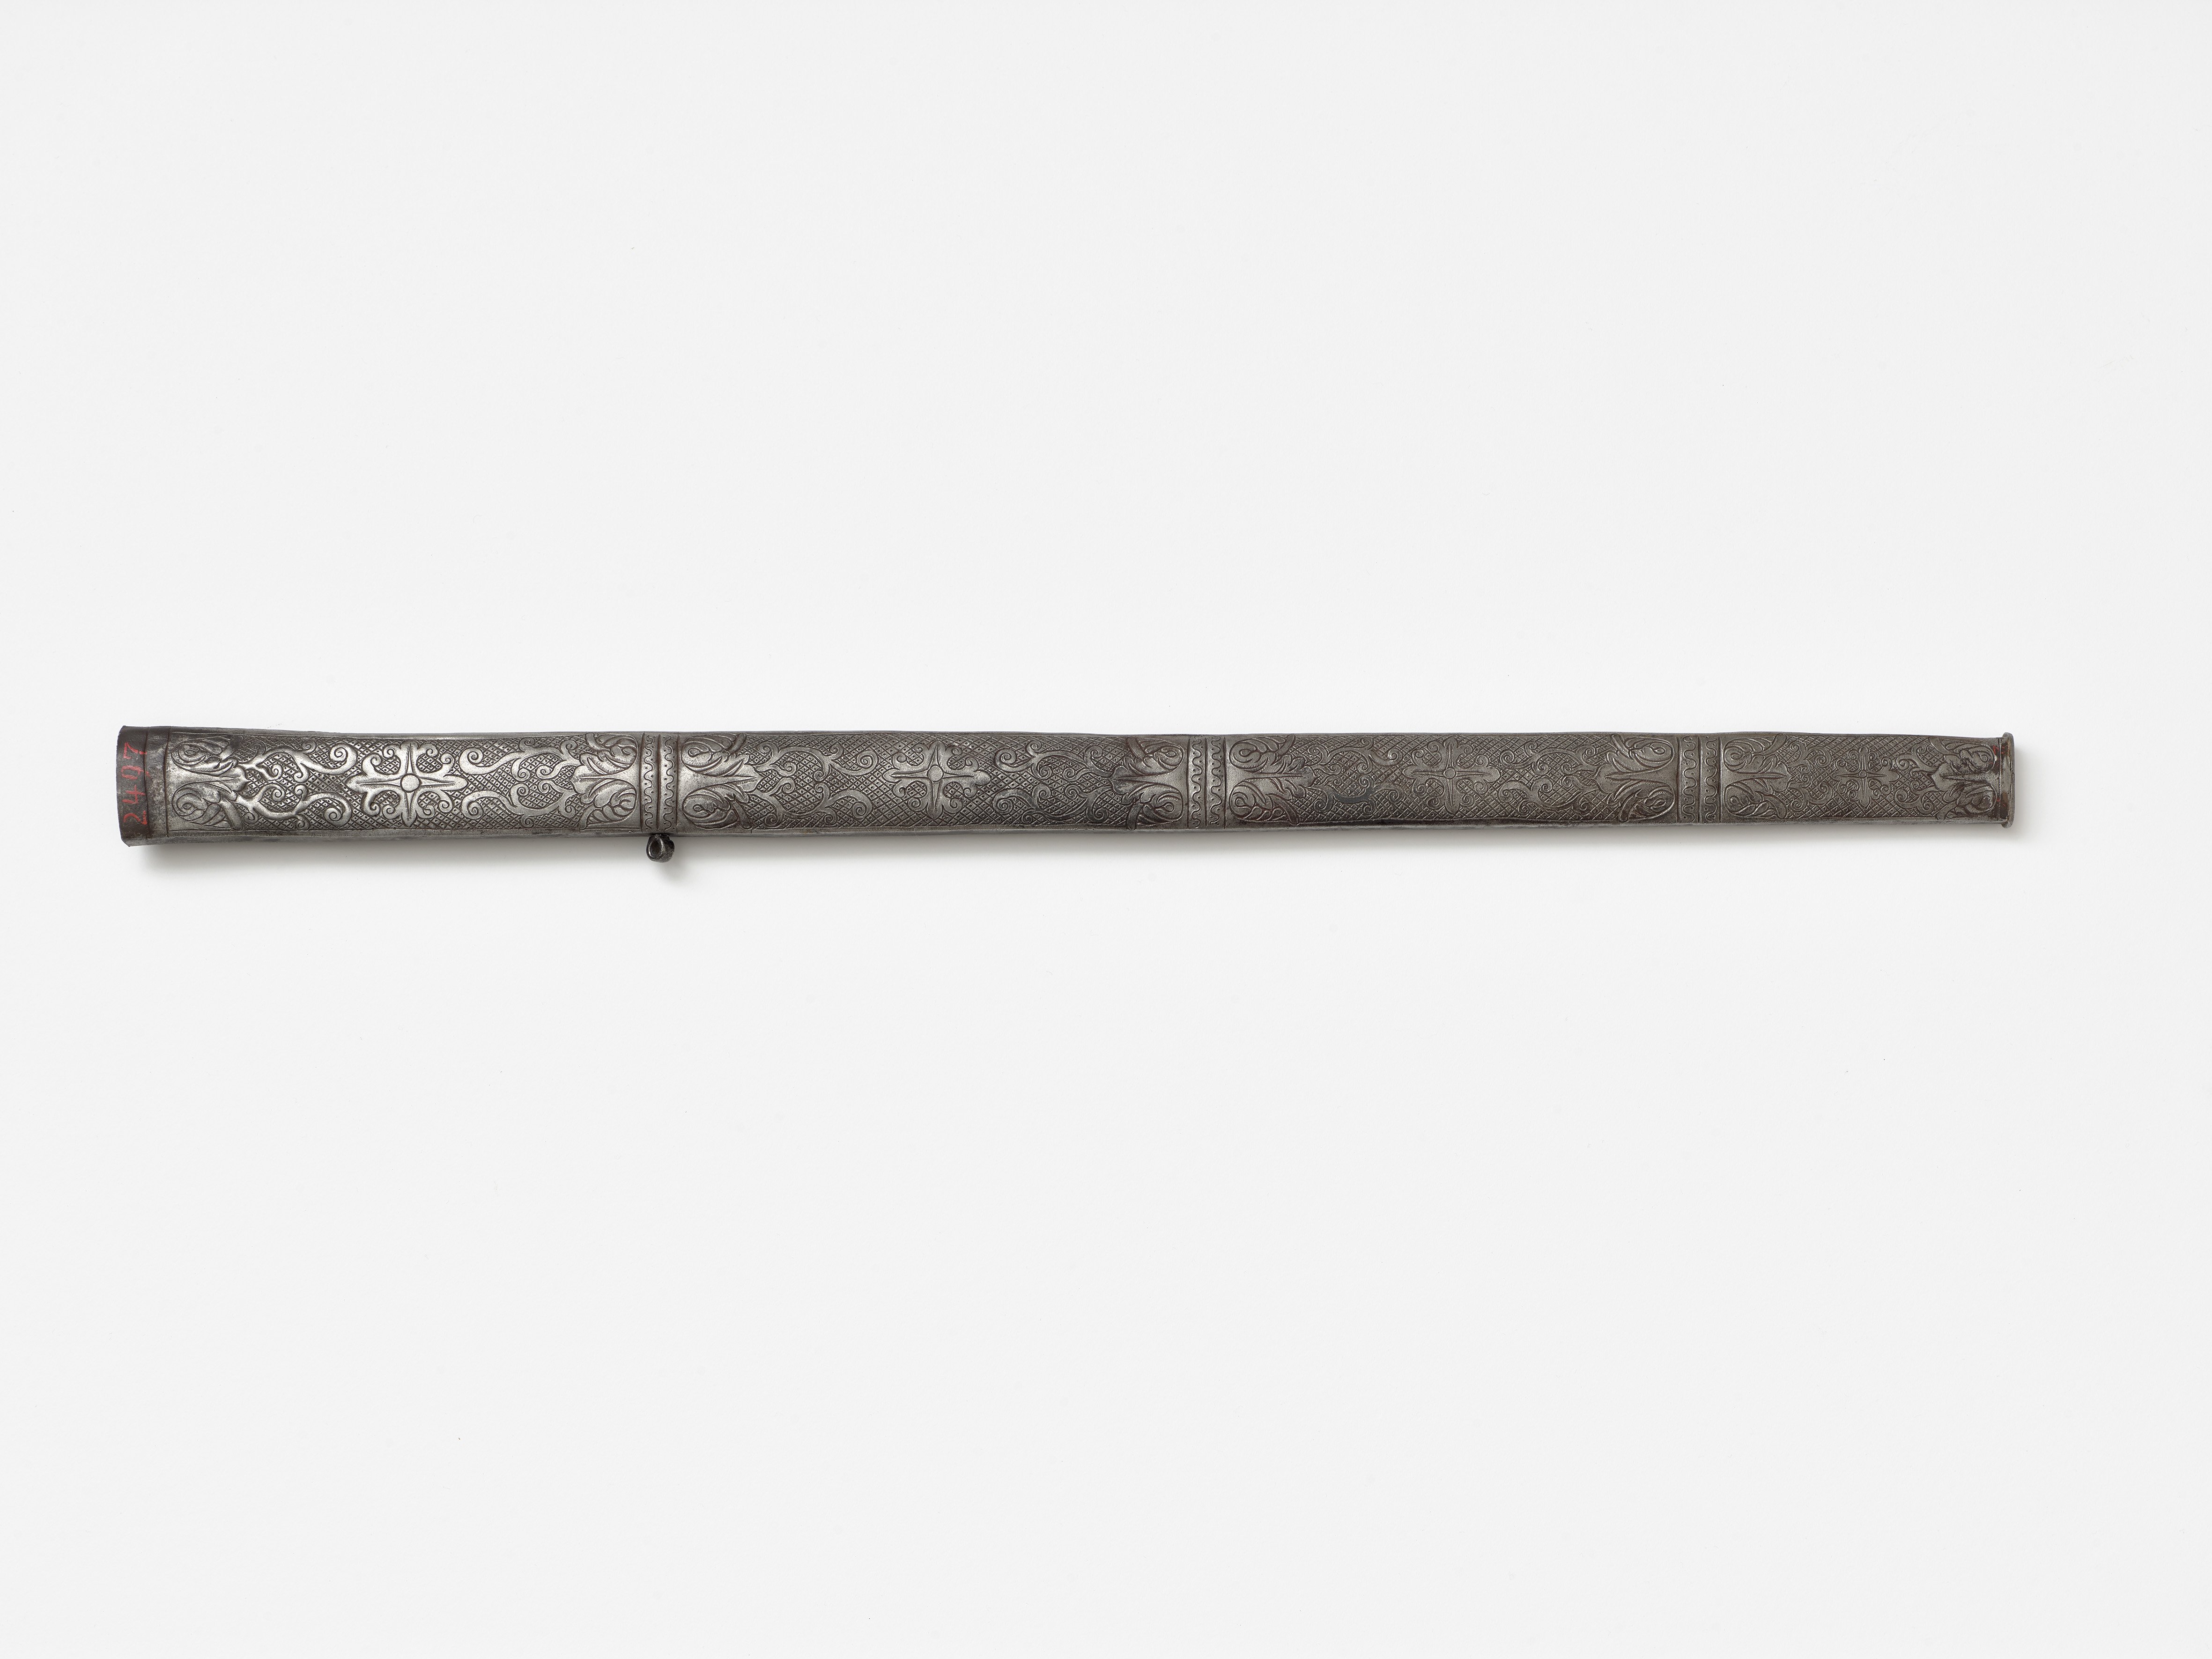 Verzierte Schwertscheide, 17. Jahrhundert (Städtisches Museum Schloss Rheydt CC BY)